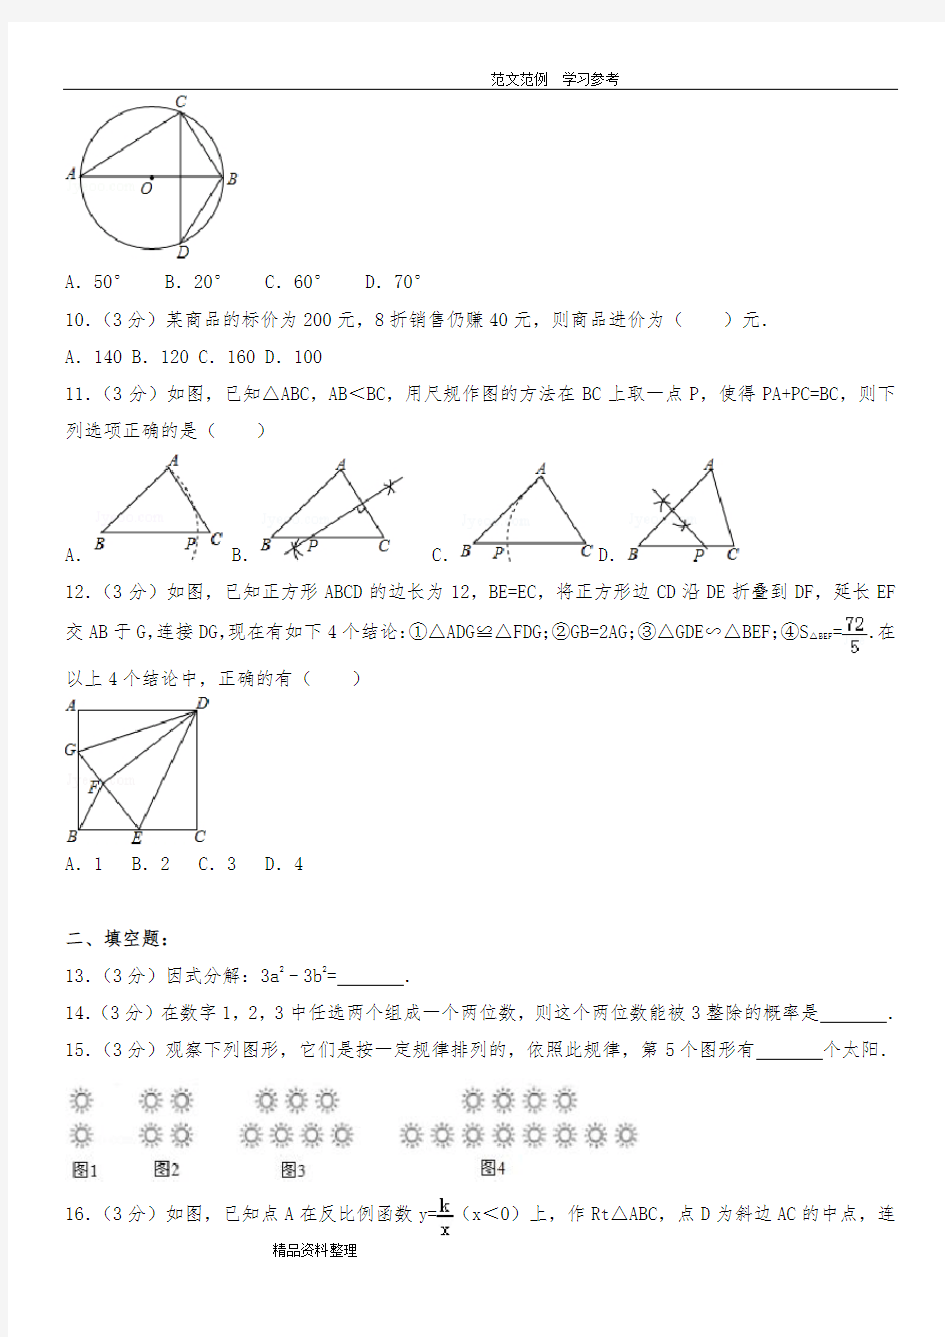 2015年深圳中考数学试卷及试卷分析报告